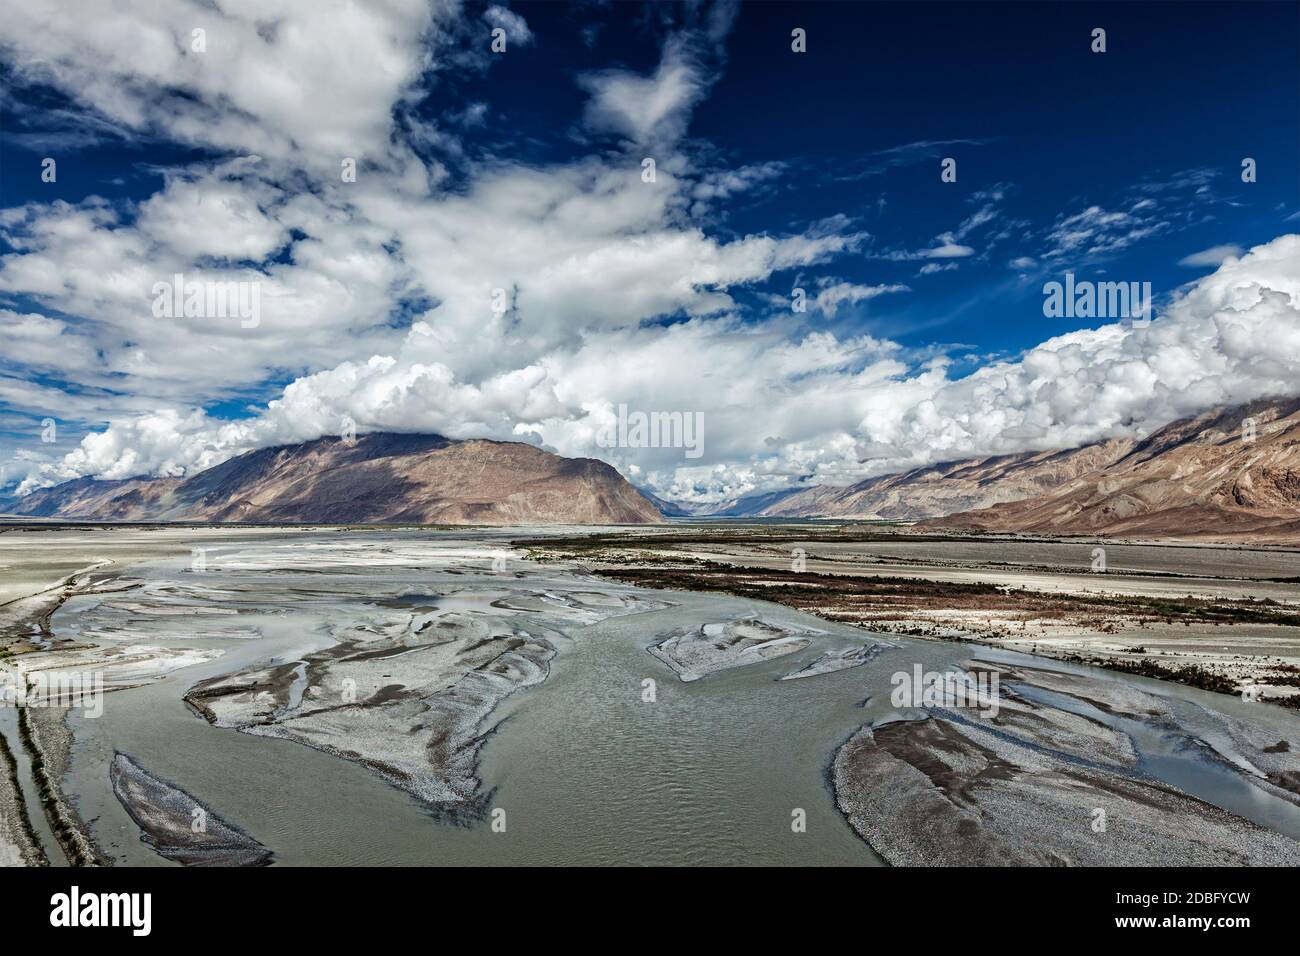 https://c8.alamy.com/comp/2DBFYCW/nubra-valley-and-nubra-river-in-himalayas-ladakh-jammu-and-kashmir-india-2DBFYCW.jpg